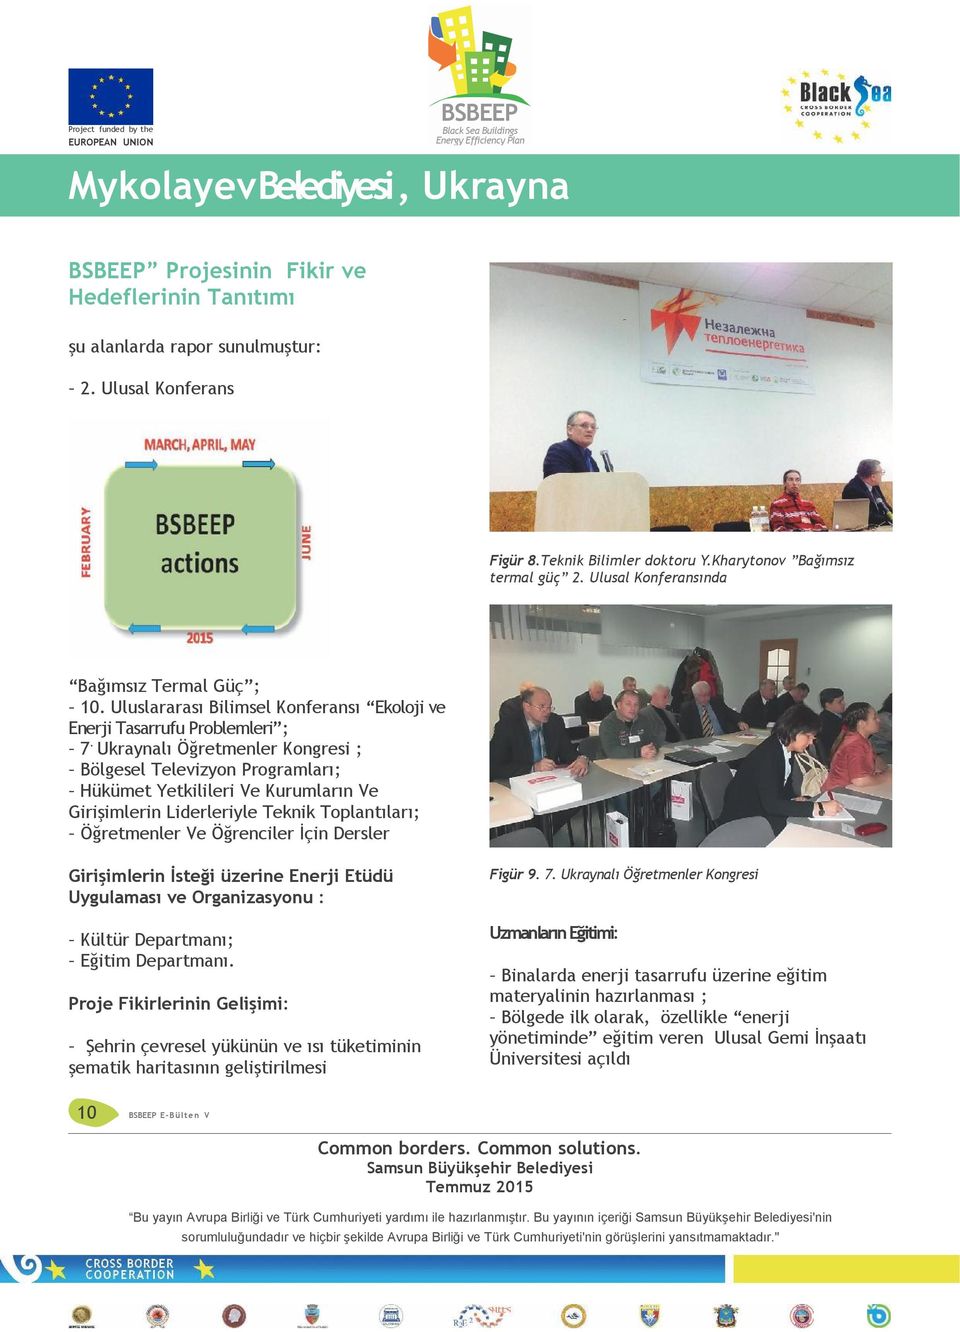 Ukraynalı Öğretmenler Kongresi ; Bölgesel Televizyon Programları; Hükümet Yetkilileri Ve Kurumların Ve Girişimlerin Liderleriyle Teknik Toplantıları; Öğretmenler Ve Öğrenciler İçin Dersler